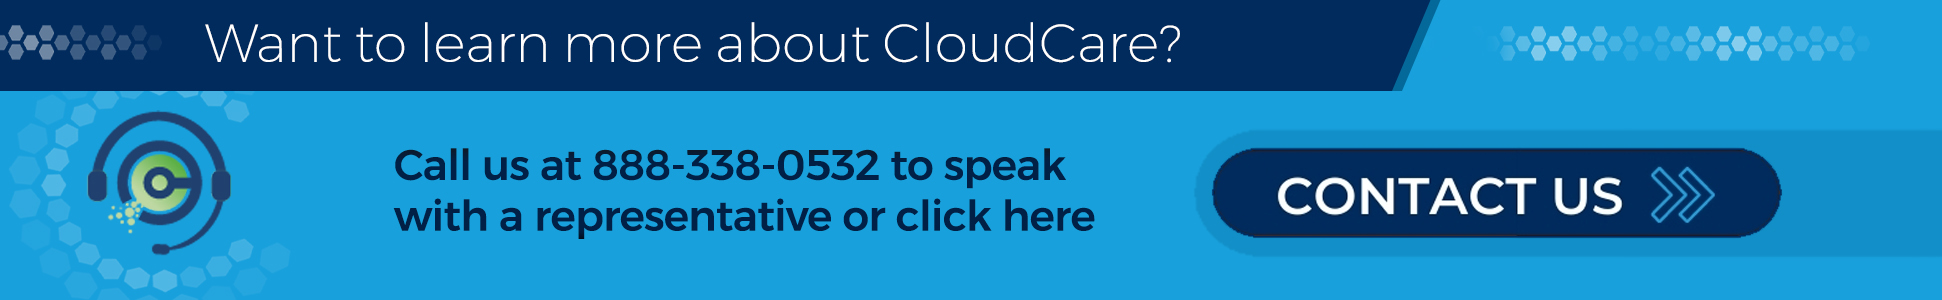 CloudCare - Contact Us